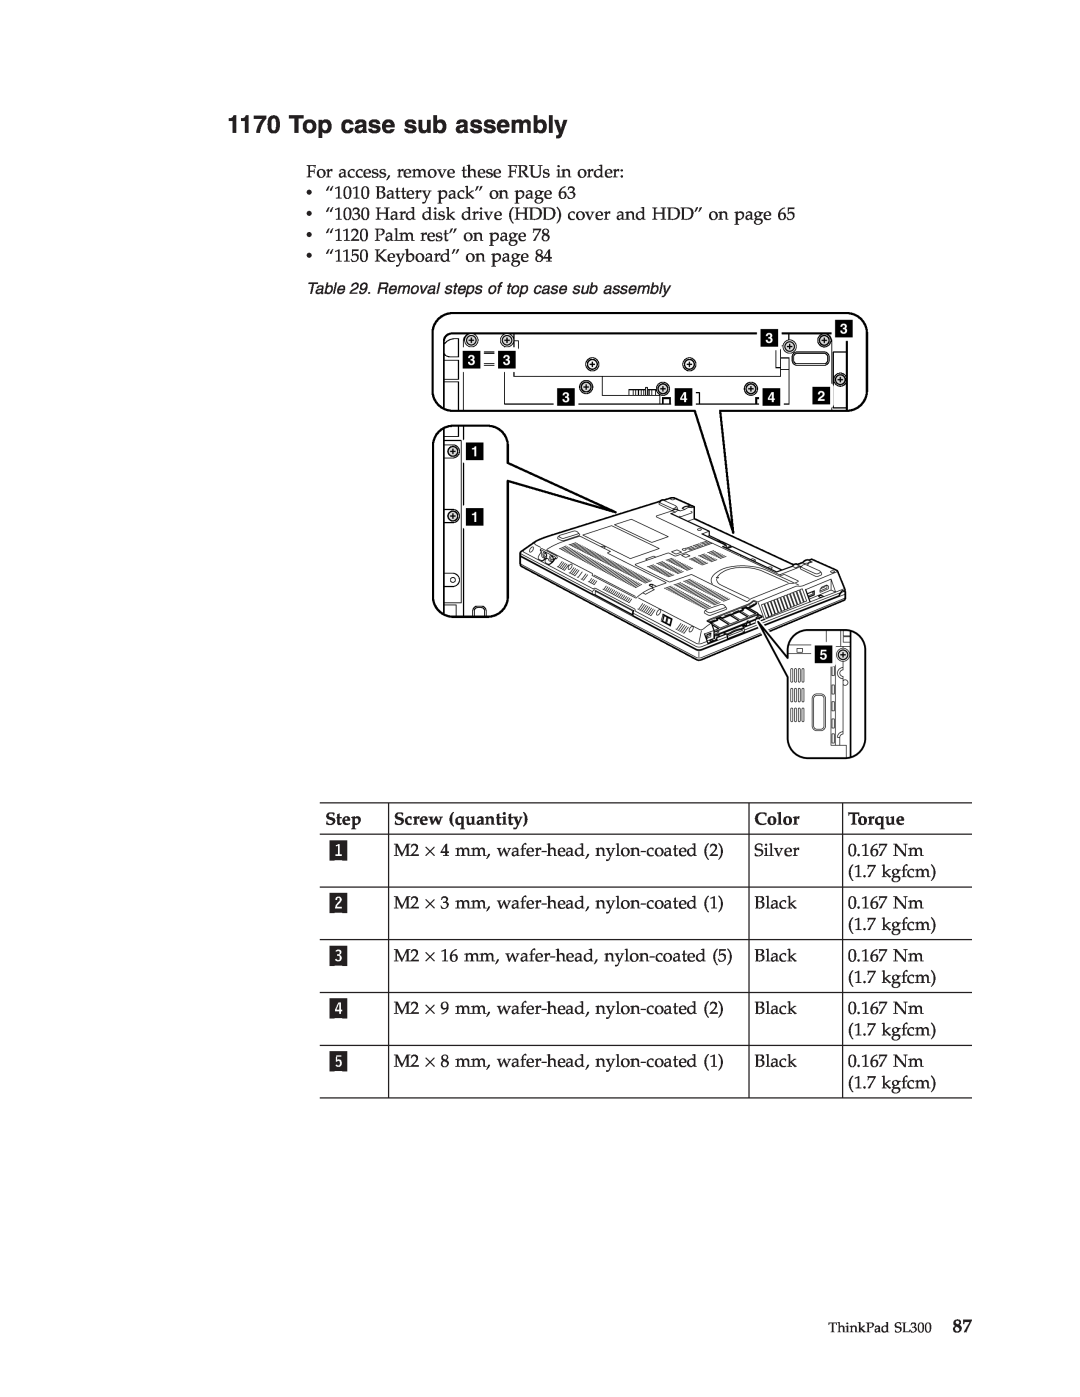 Lenovo SL300 manual Top case sub assembly, Step, Screw quantity, Color, Torque 